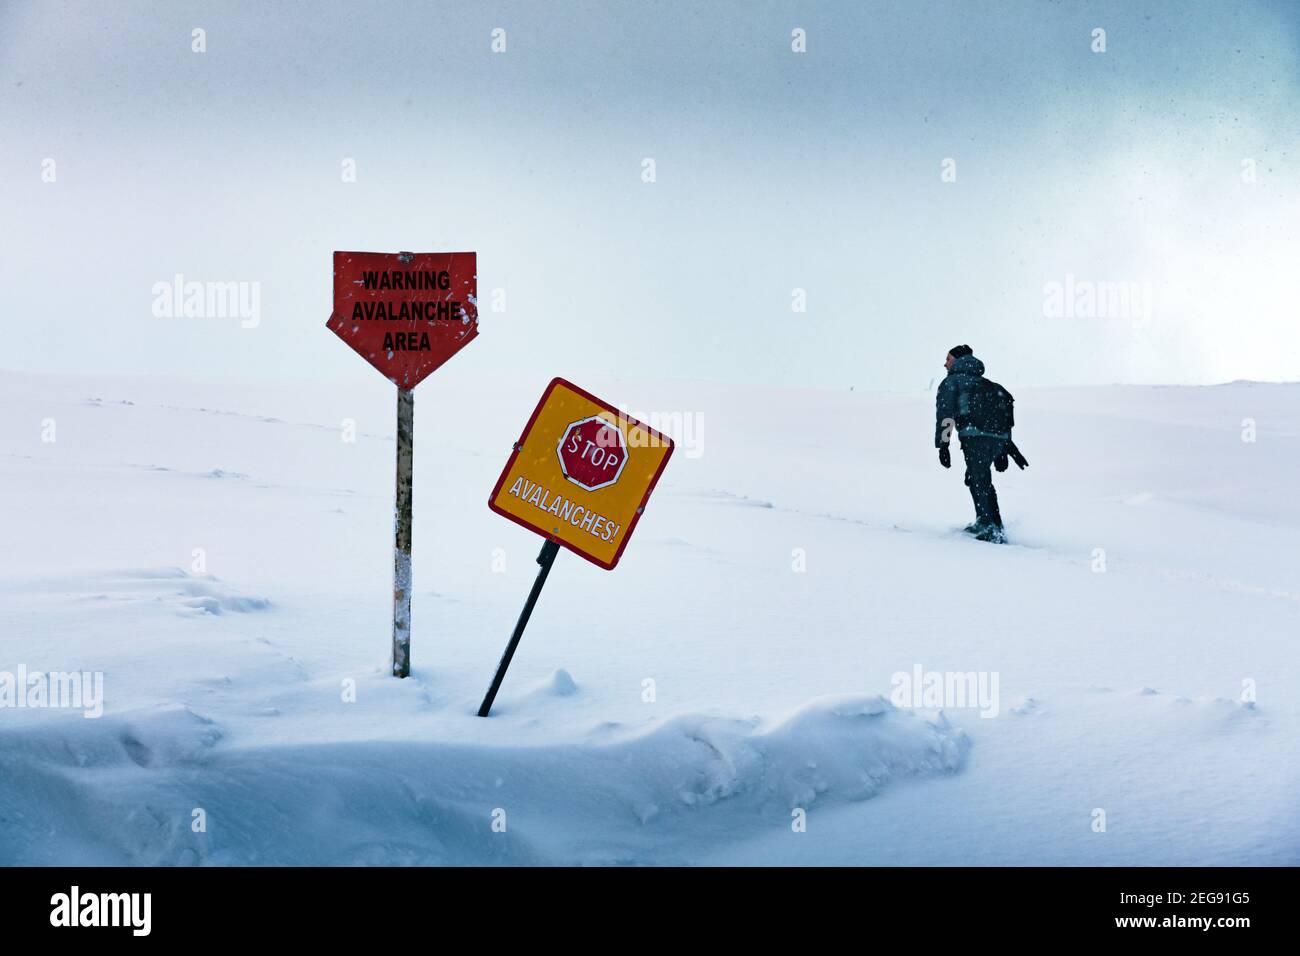 Il turista entra nella zona pericolosa proibita della valanga in inverno. Cartelli di avvertenza sulla neve in primo piano. Concetto di pericolo valanghe Foto Stock